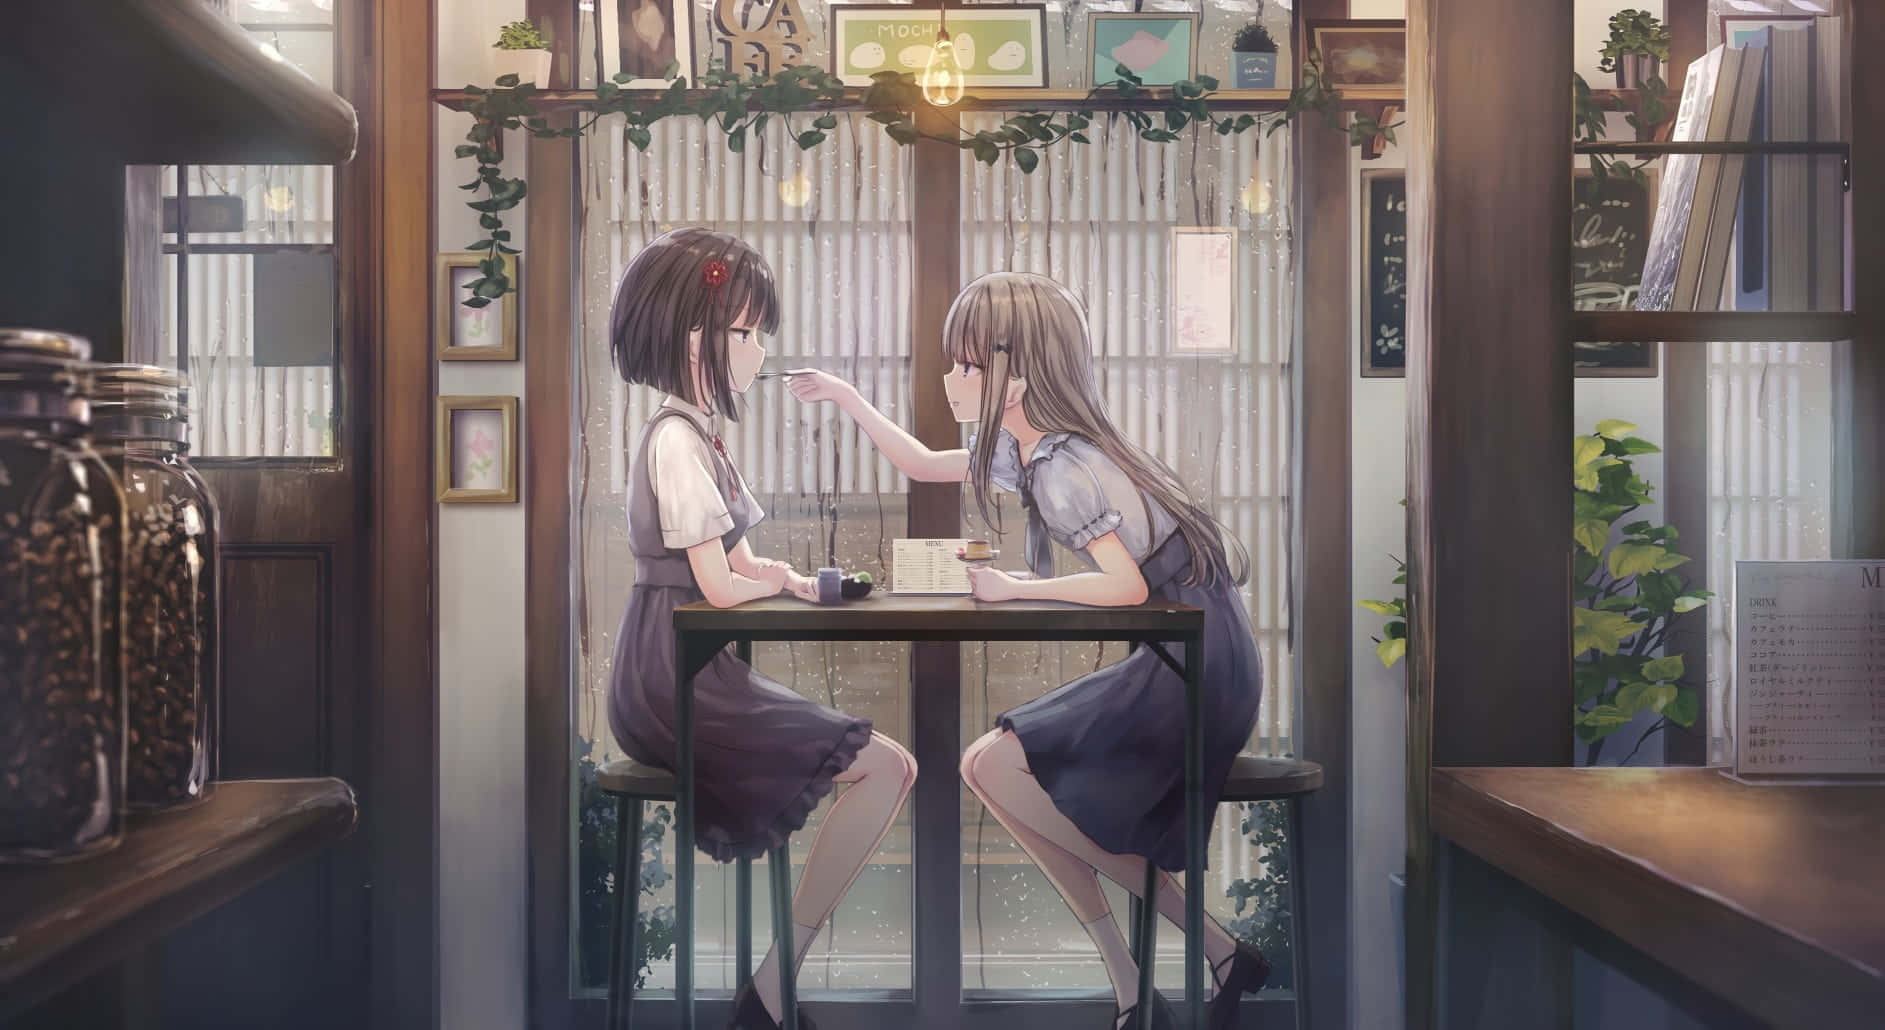 Nyd din yndlings Anime over en lækker forfriskende kop kaffe på Cafe Anime. Wallpaper